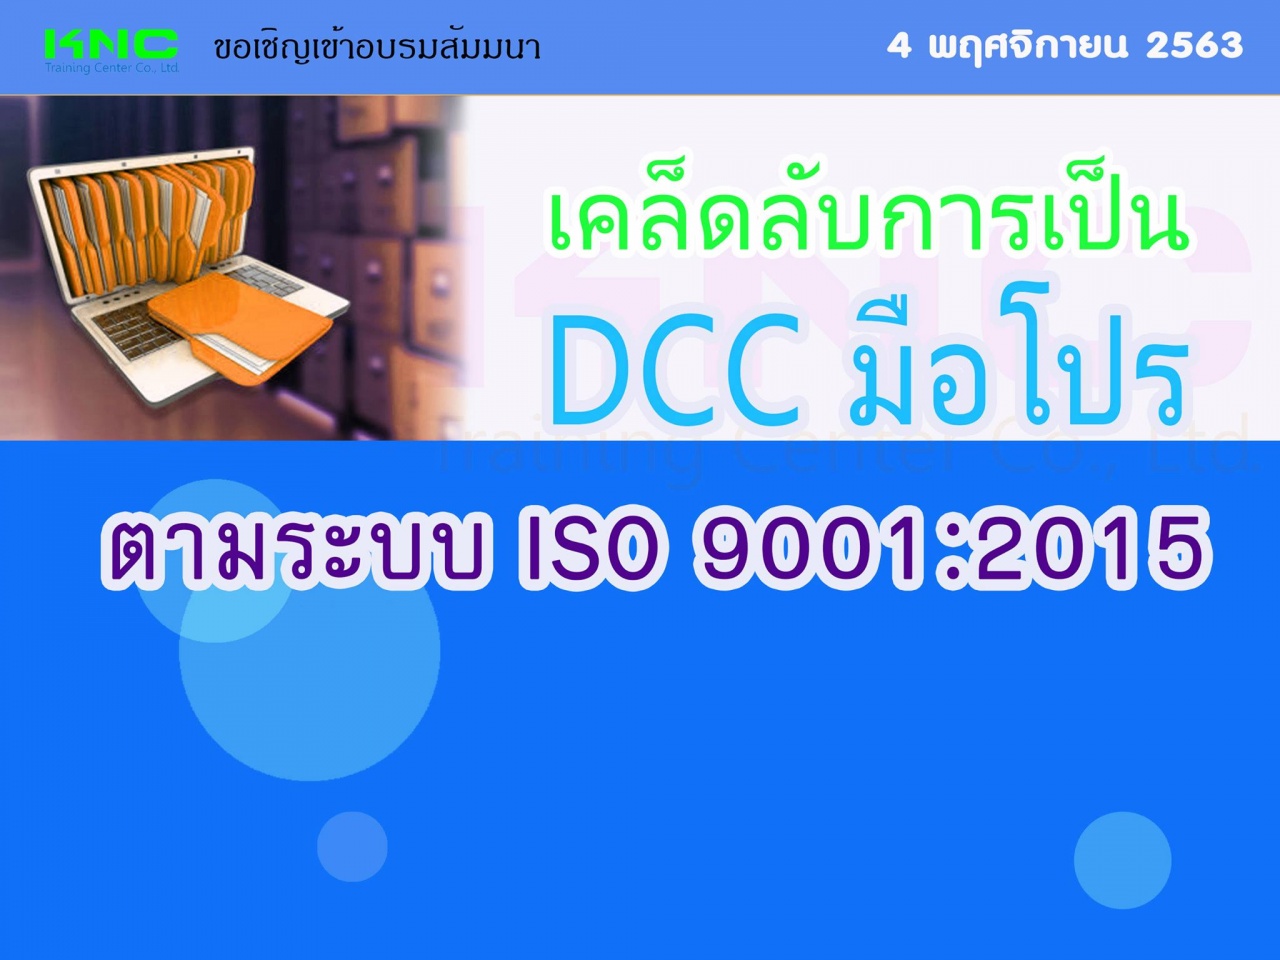 เคล็ดลับการเป็น DCC มือโปรตามระบบ ISO 9001:2015